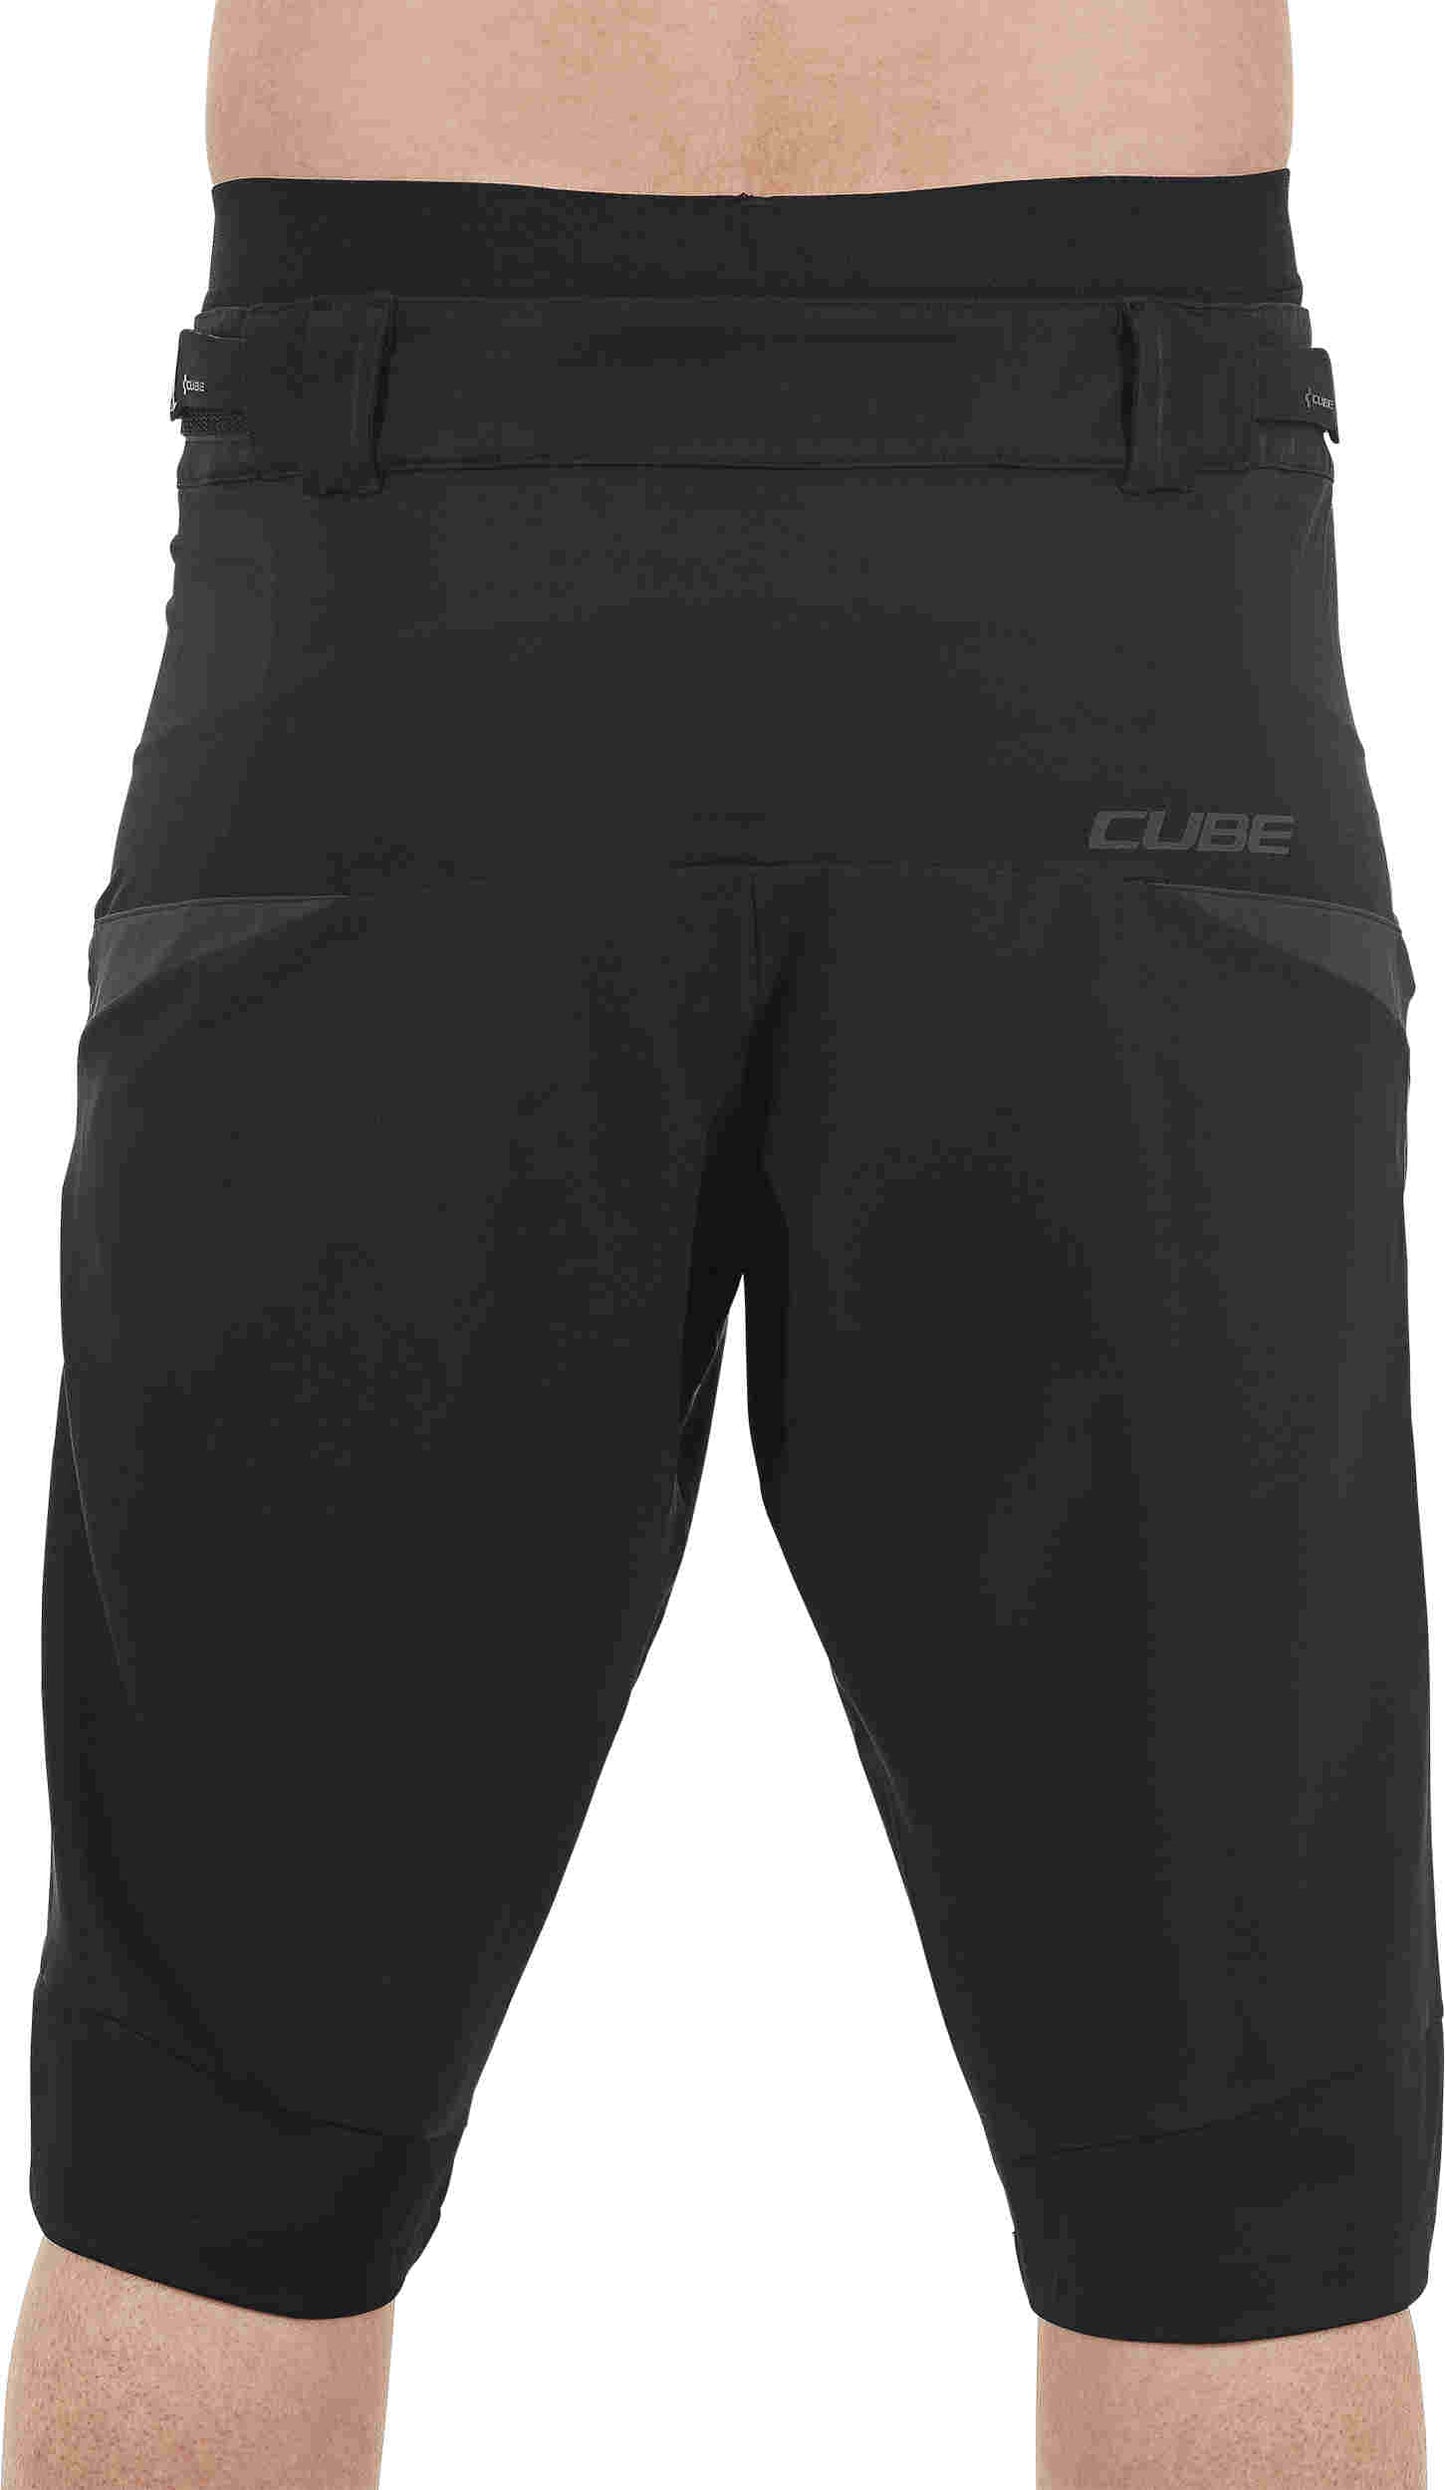 CUBE Tour Baggy Shorts Incl. Liner Black